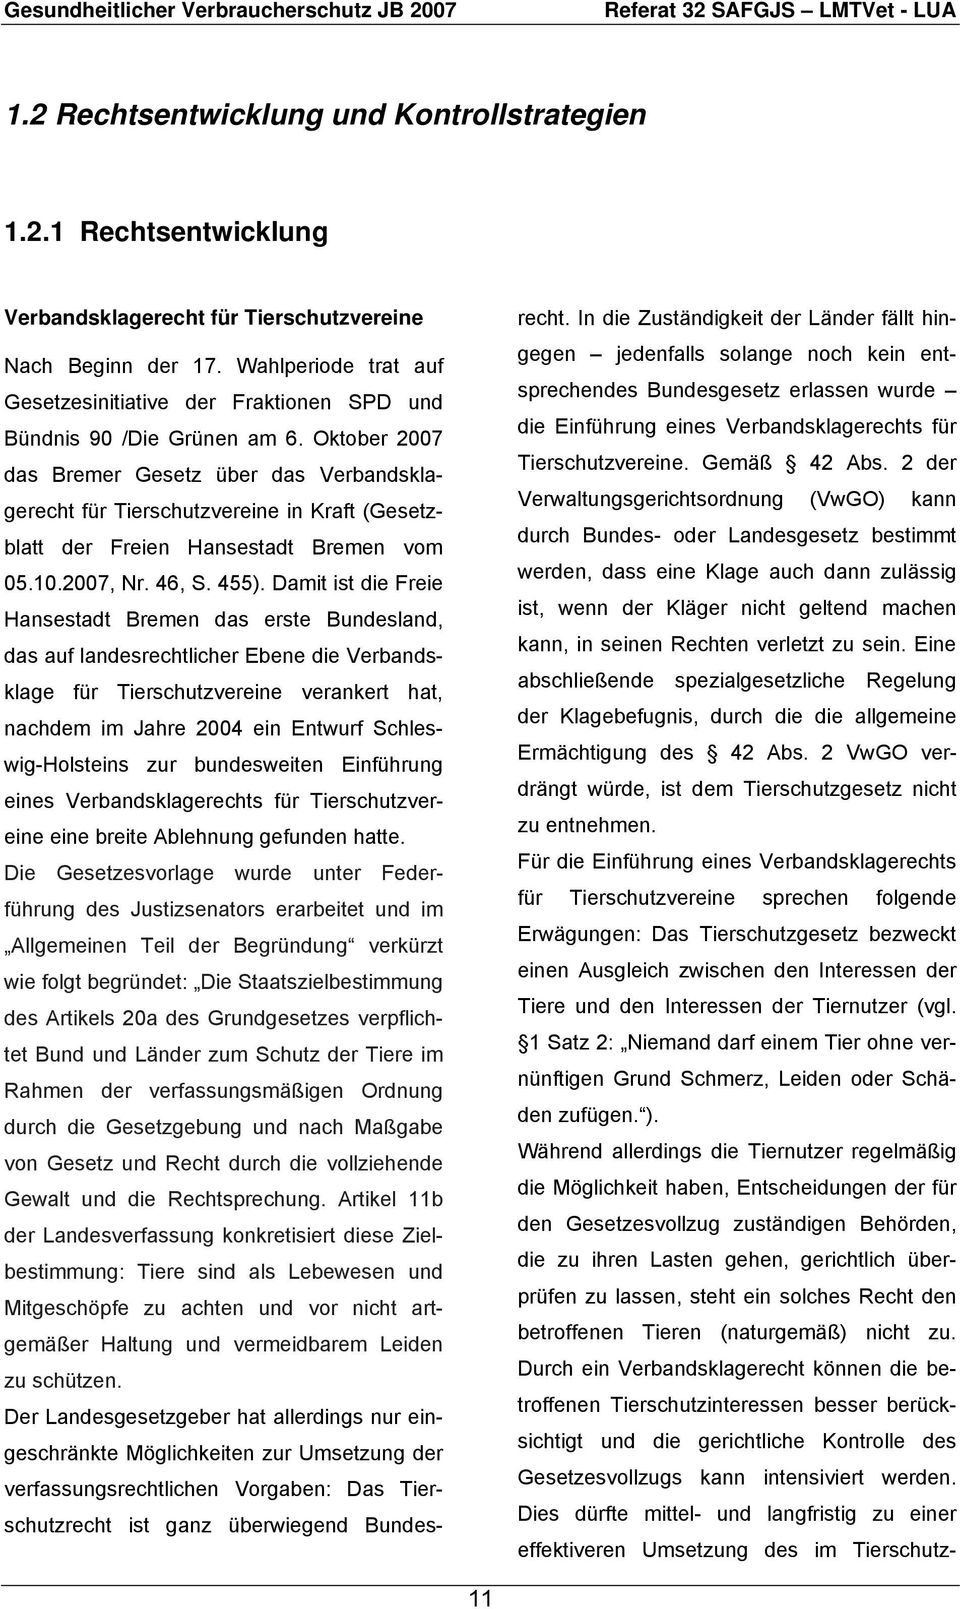 Oktober 2007 das Bremer Gesetz über das Verbandsklagerecht für Tierschutzvereine in Kraft (Gesetzblatt der Freien Hansestadt Bremen vom 05.10.2007, Nr. 46, S. 455).